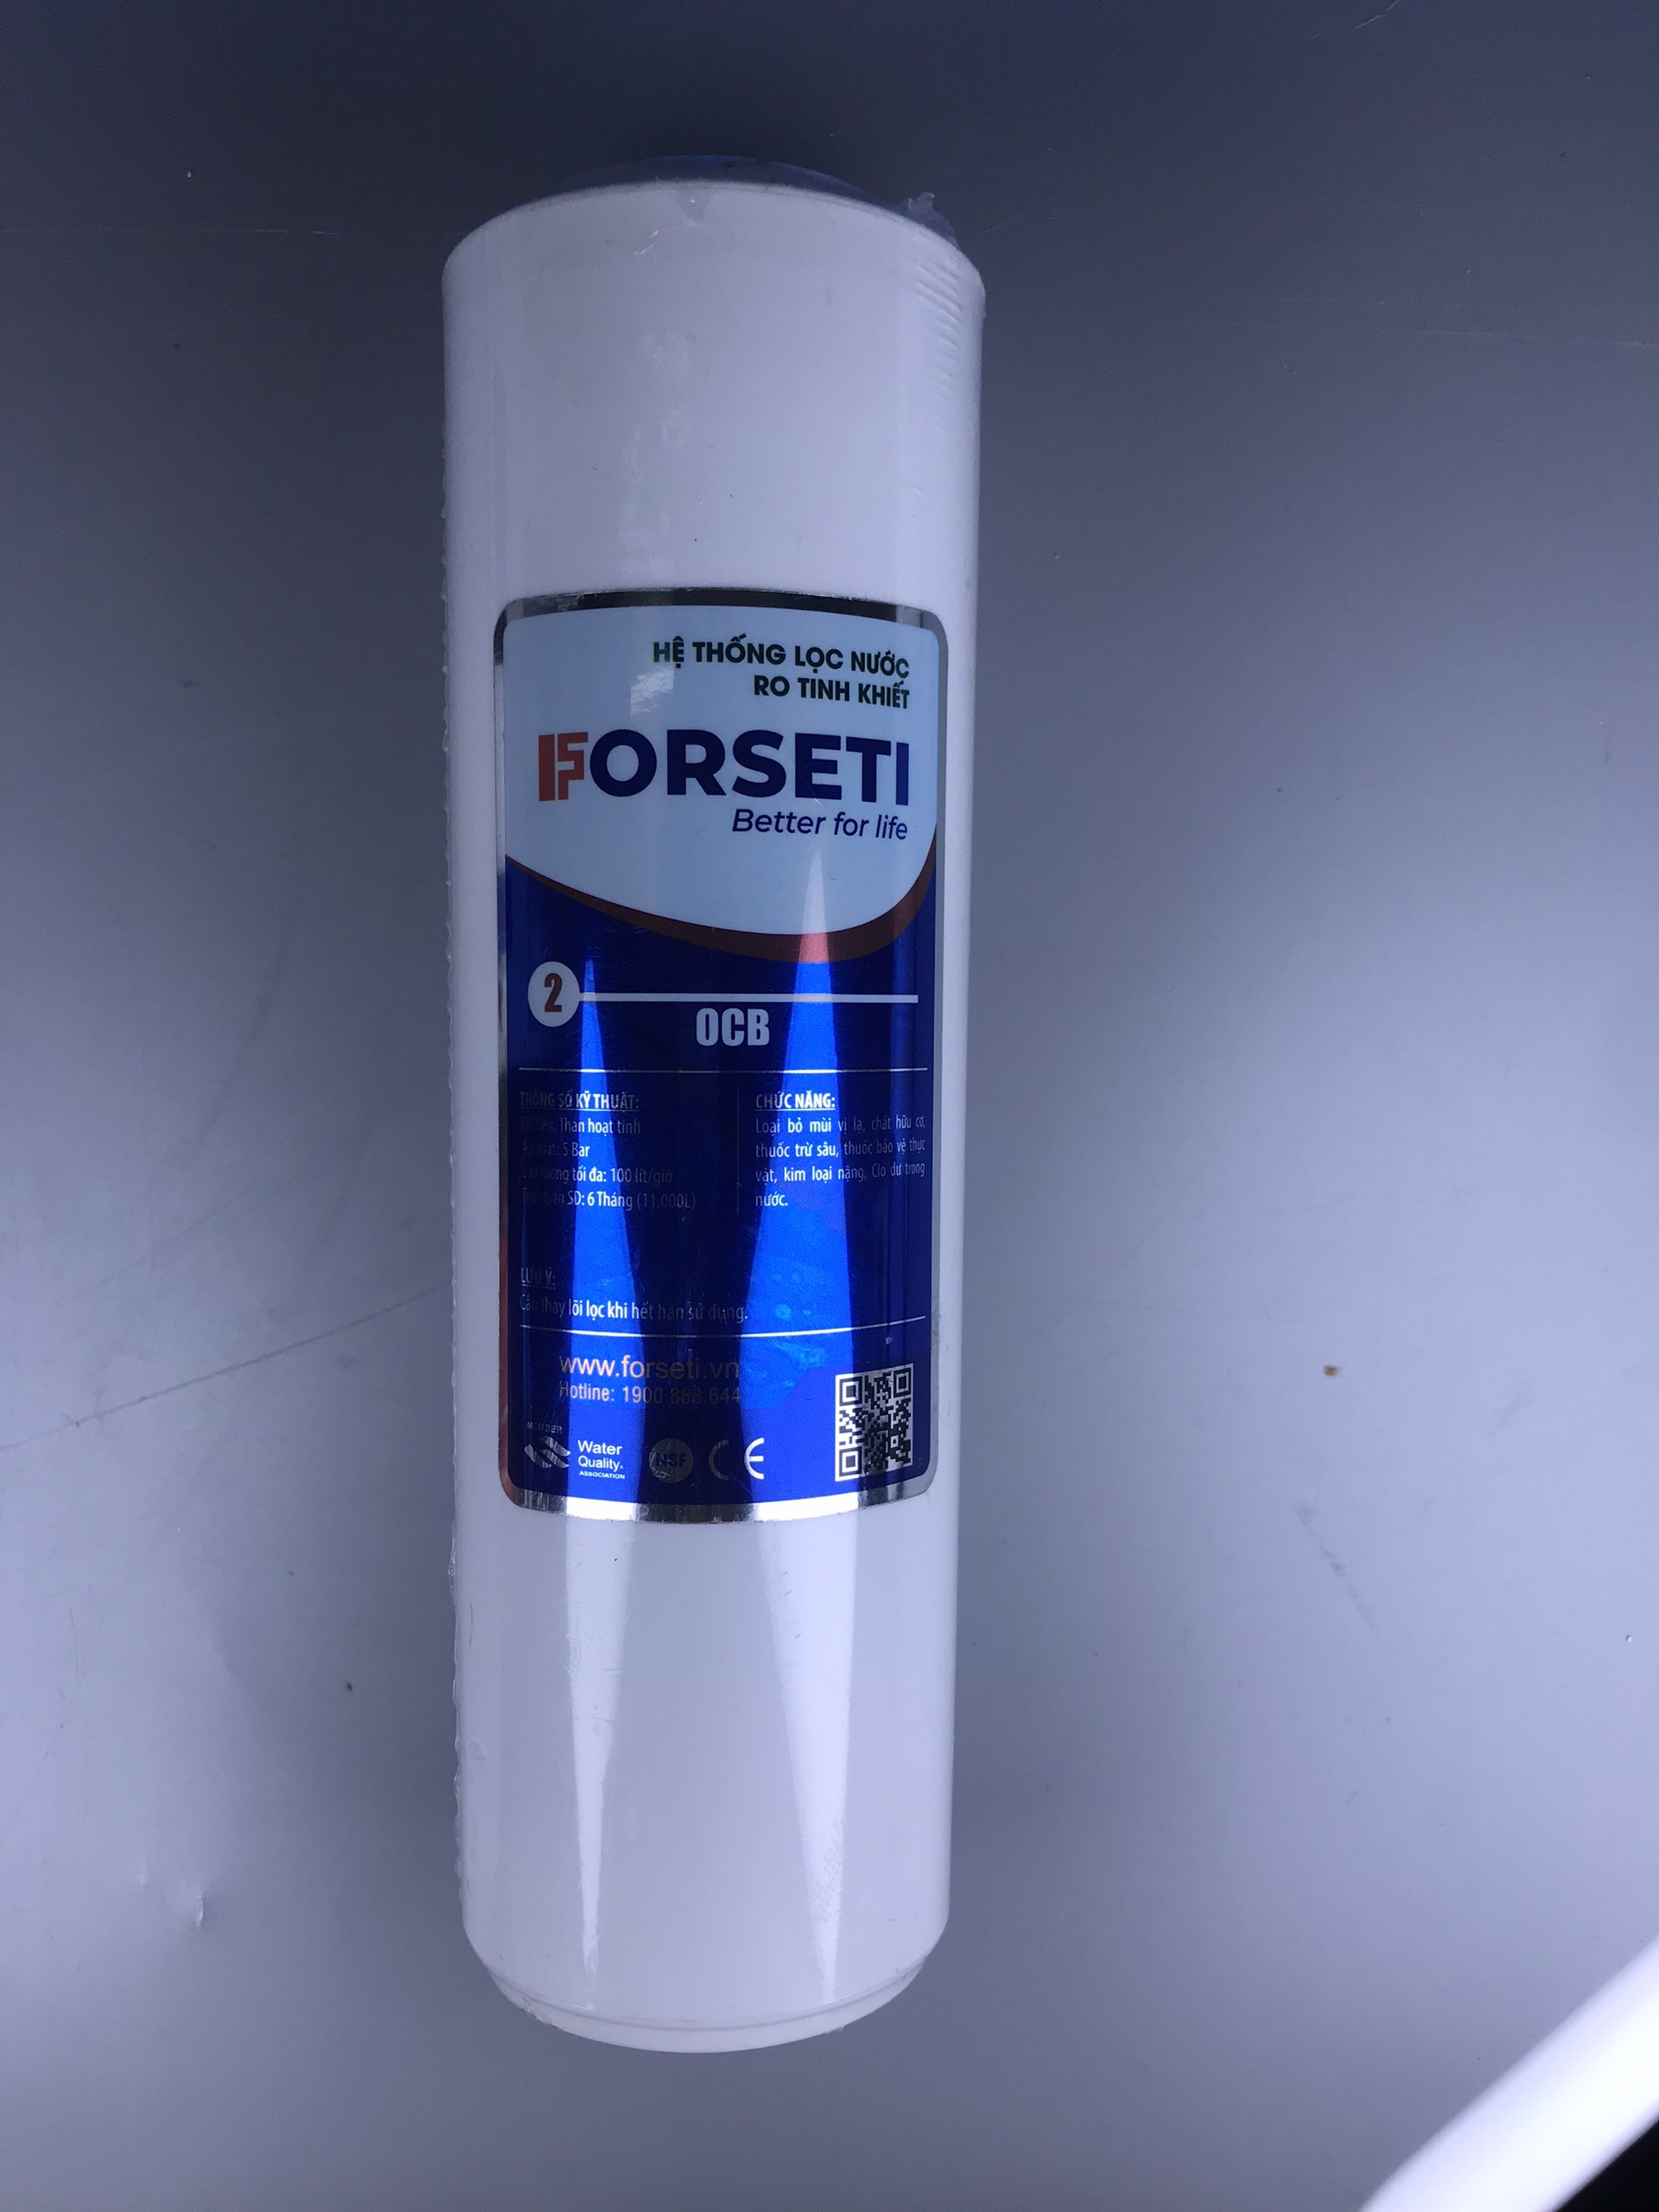 Lõi lọc nước số 2 Forseti giúp loại bỏ mùi hôi - Hàng chính hãng